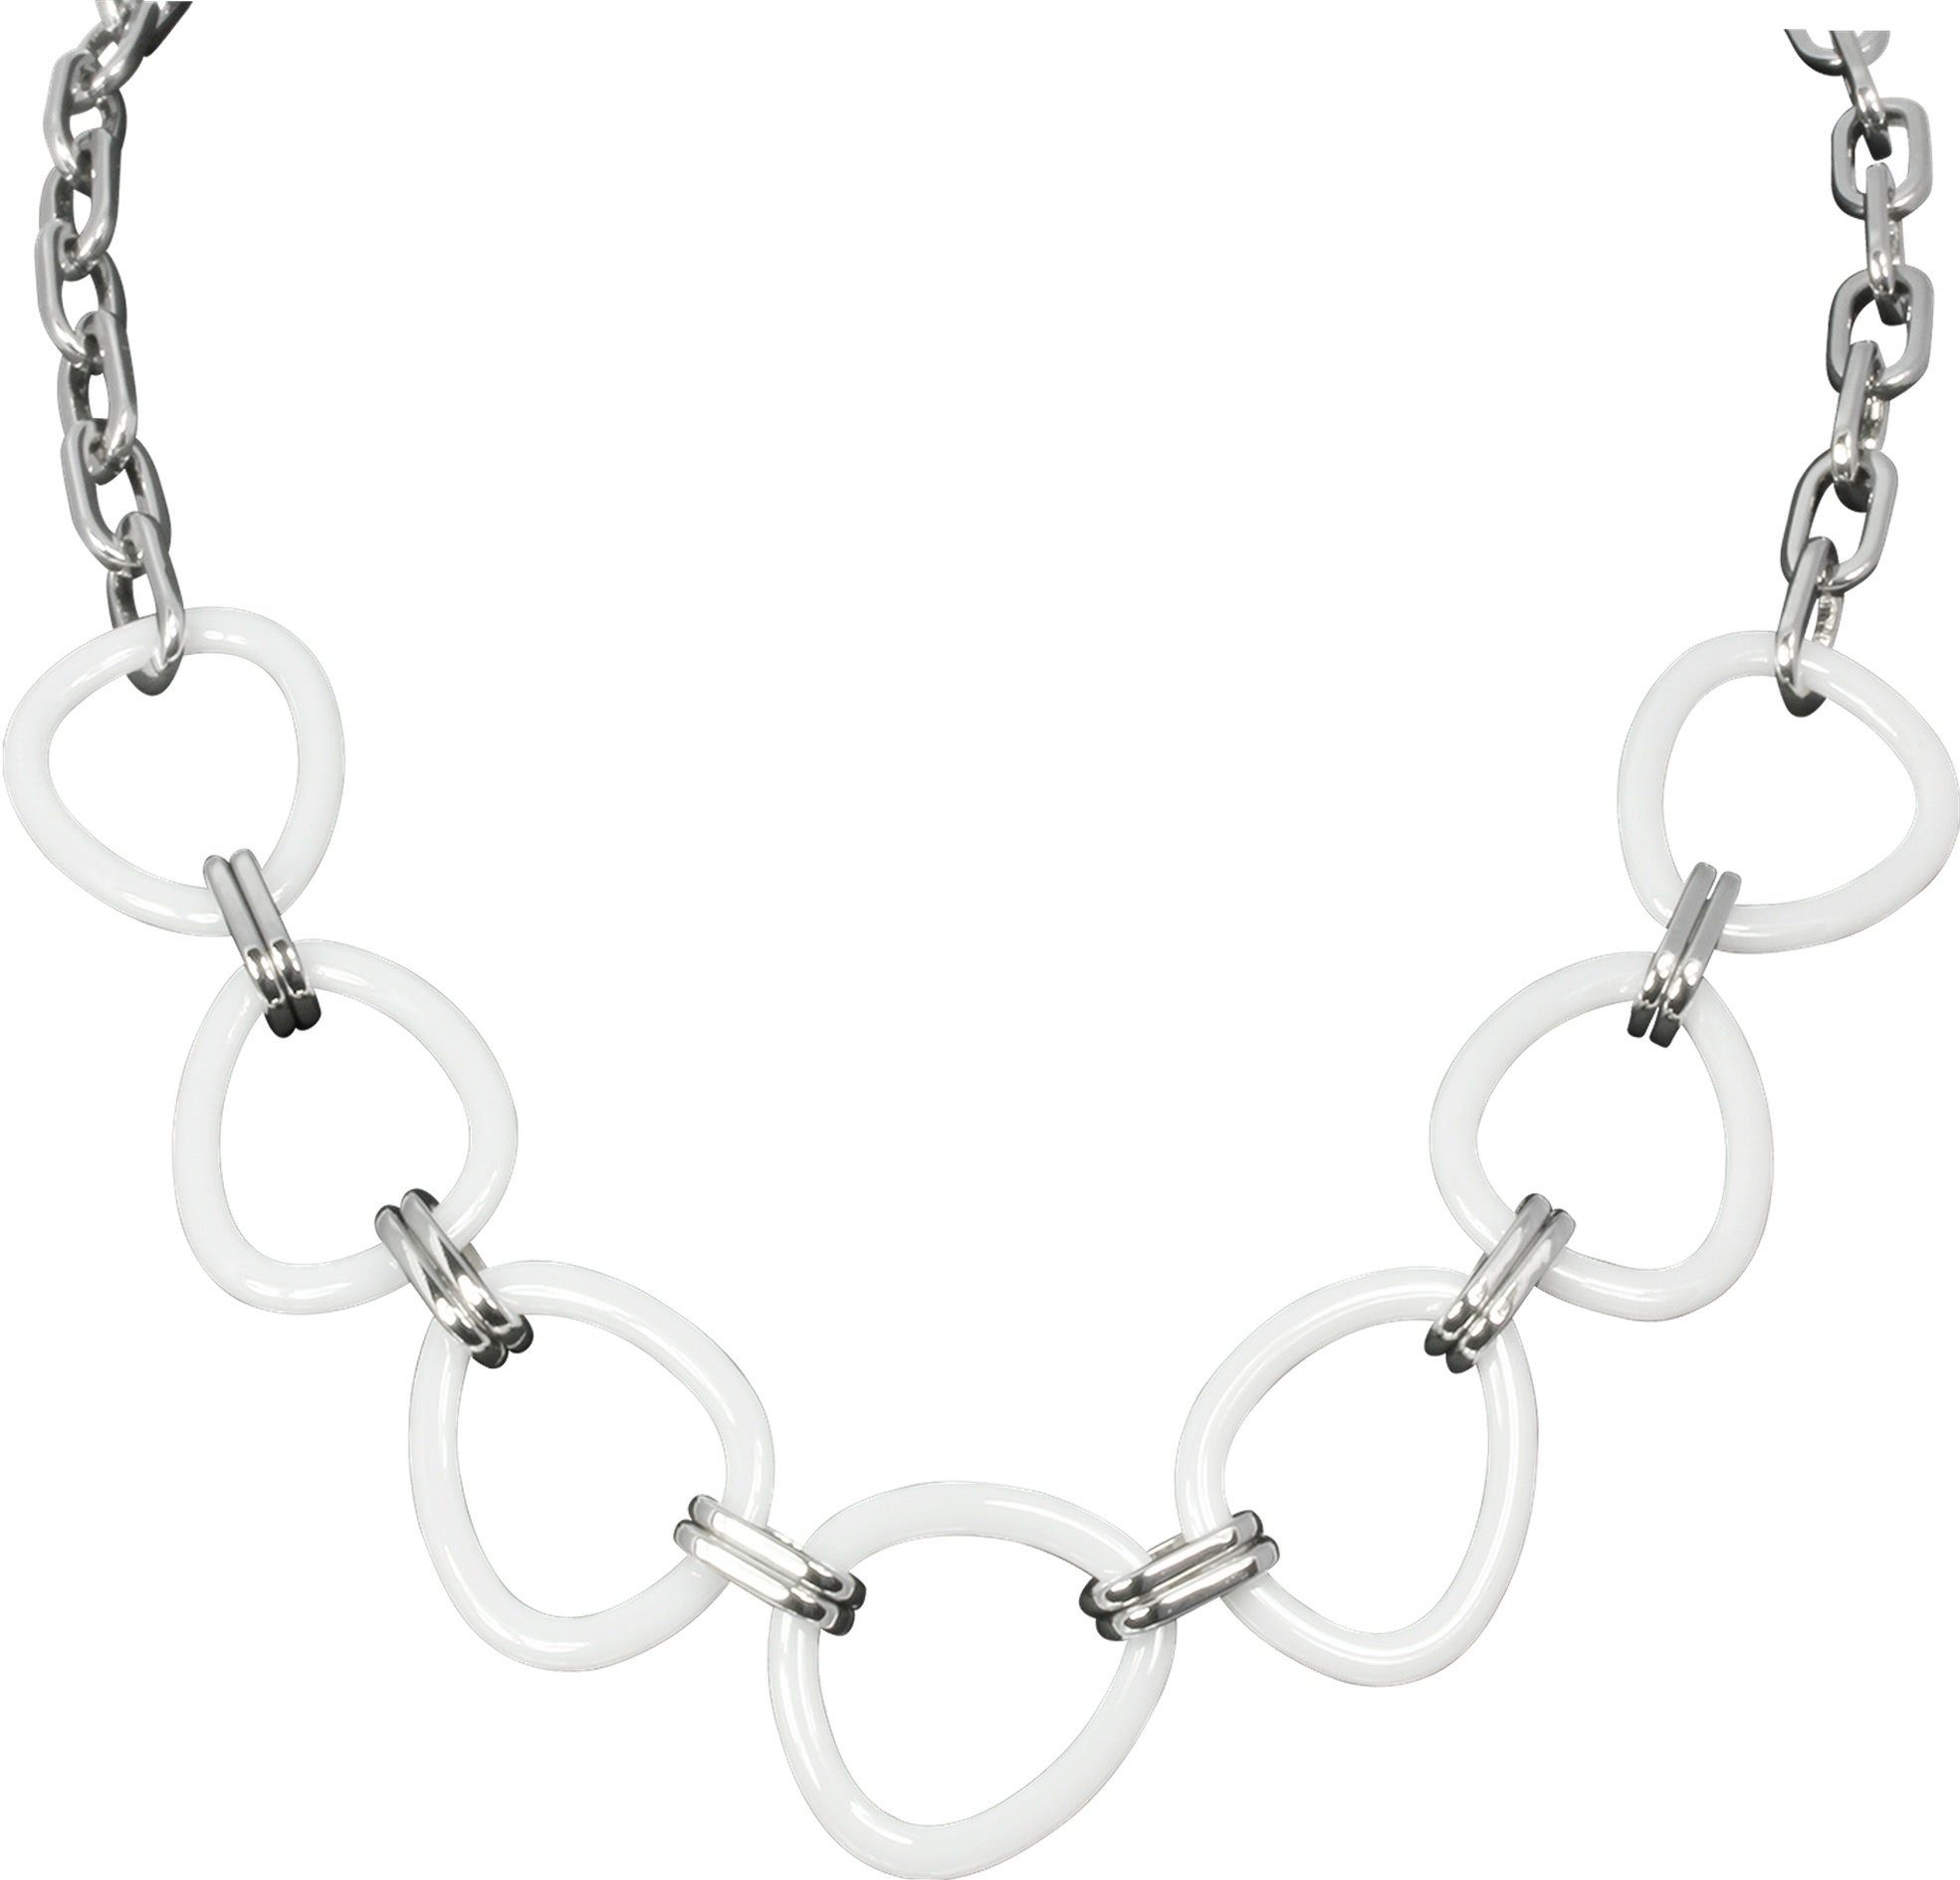 Amello Edelstahlkette (Halskette), Halsketten weiß aus Steel) silber Damen (Stainless (Dreieck) Halskette Dreieck Amello Edelstahl